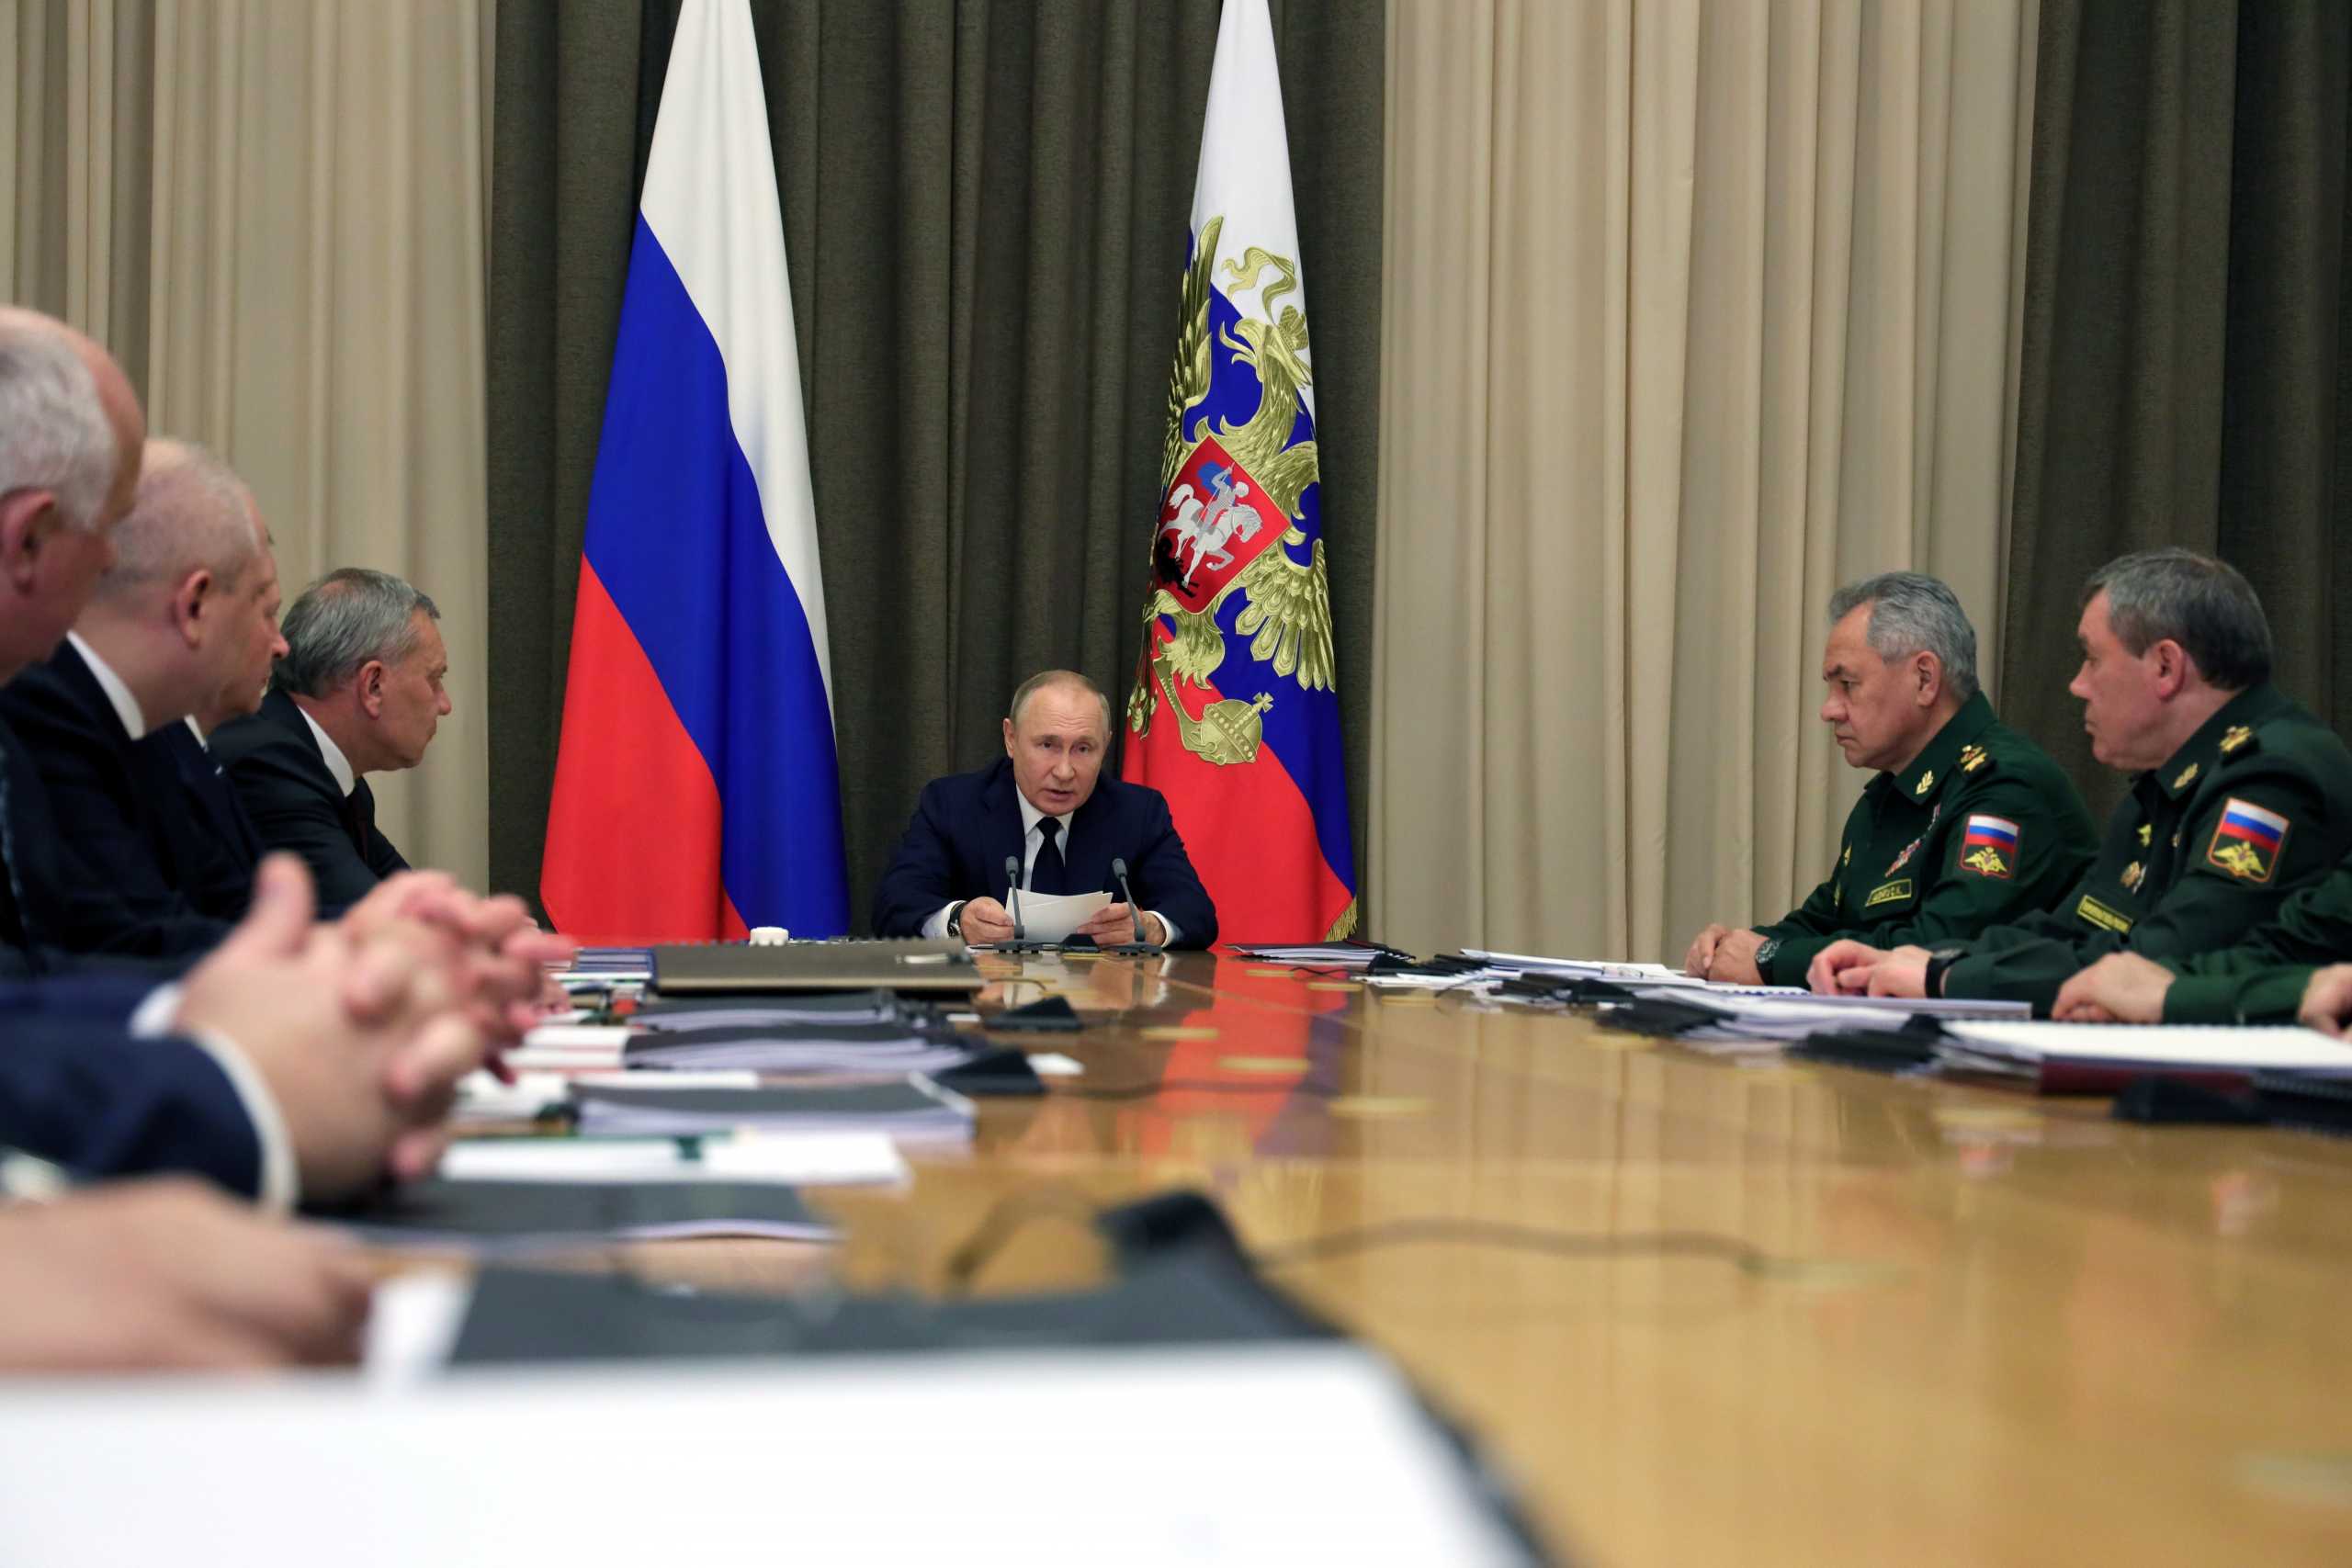 Βλάντιμιρ Πούτιν: Επισείει τον κίνδυνο πυρηνικής σύρραξης και προειδοποιεί ότι θα αντιδράσει